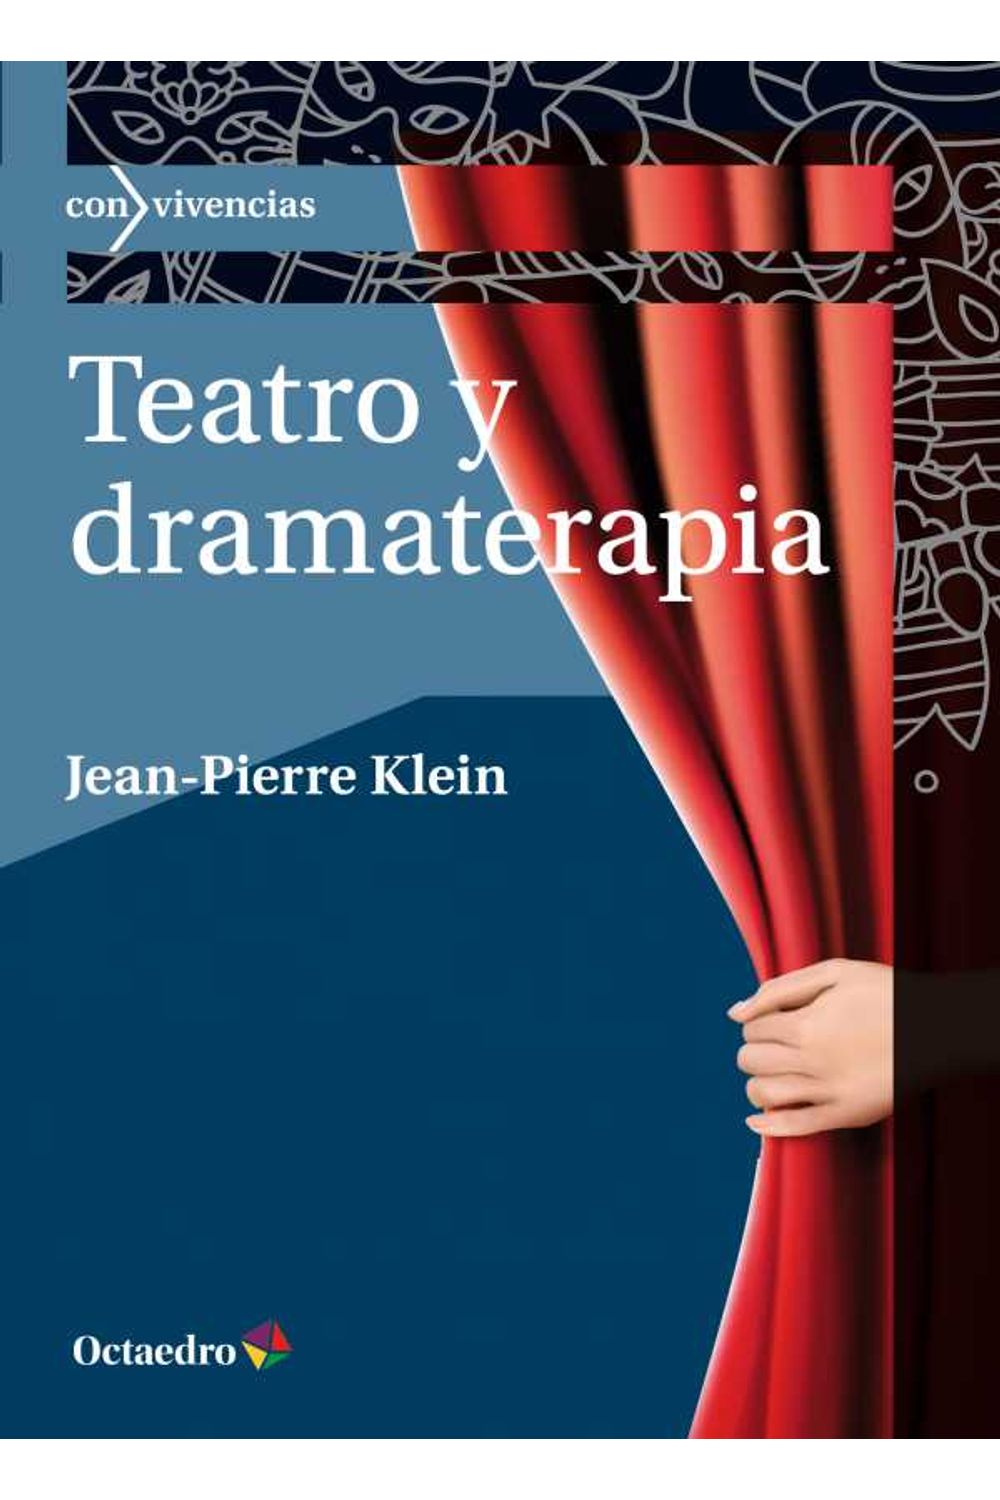 bw-teatro-y-dramaterapia-ediciones-octaedro-9788499219479